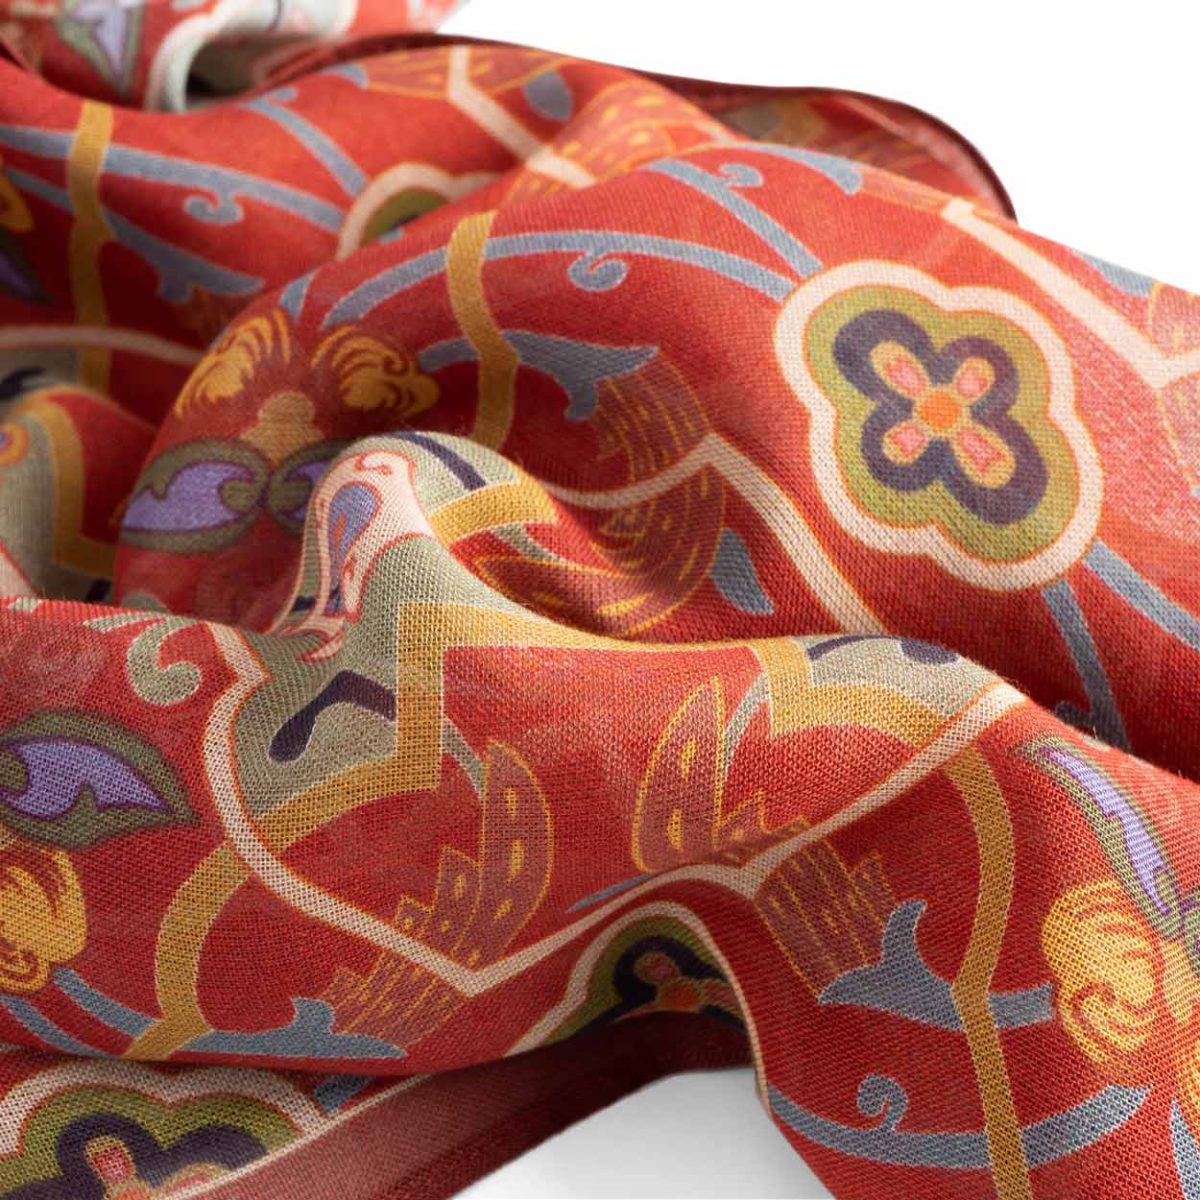 Red foulard detail